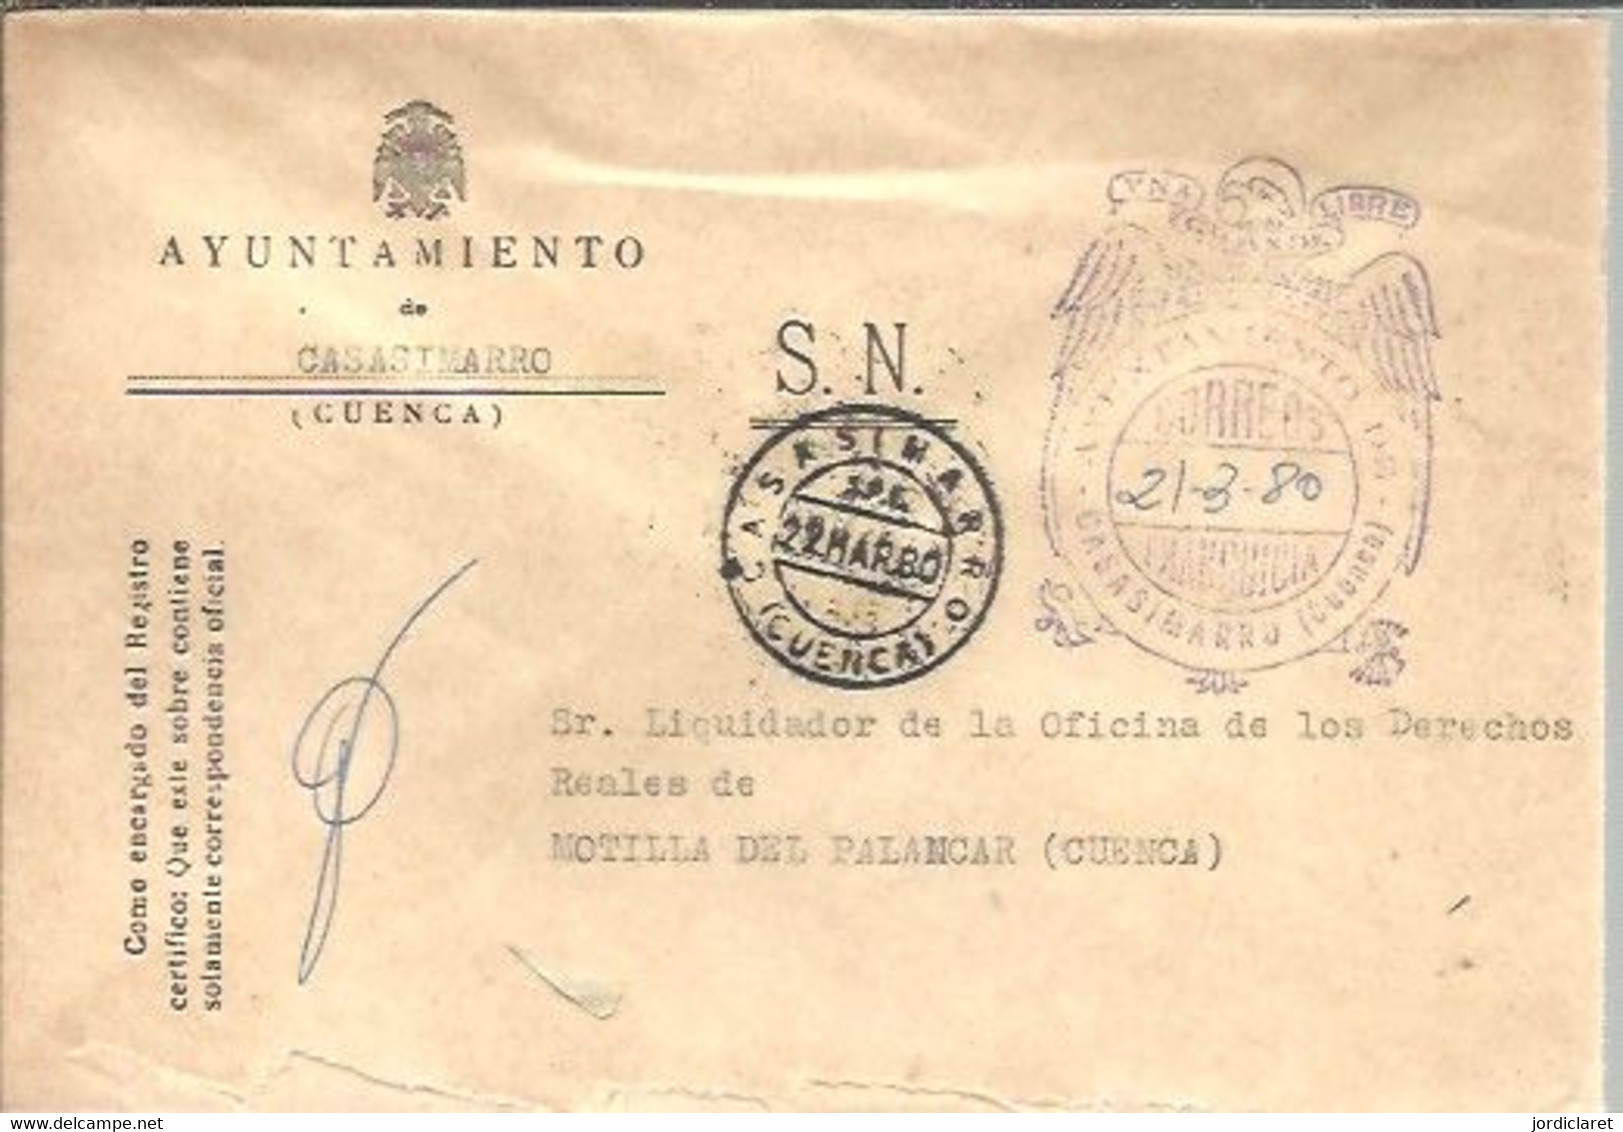 AYUNTAMIENTO  CASASMARRO CUENCA  1980 - Postage Free